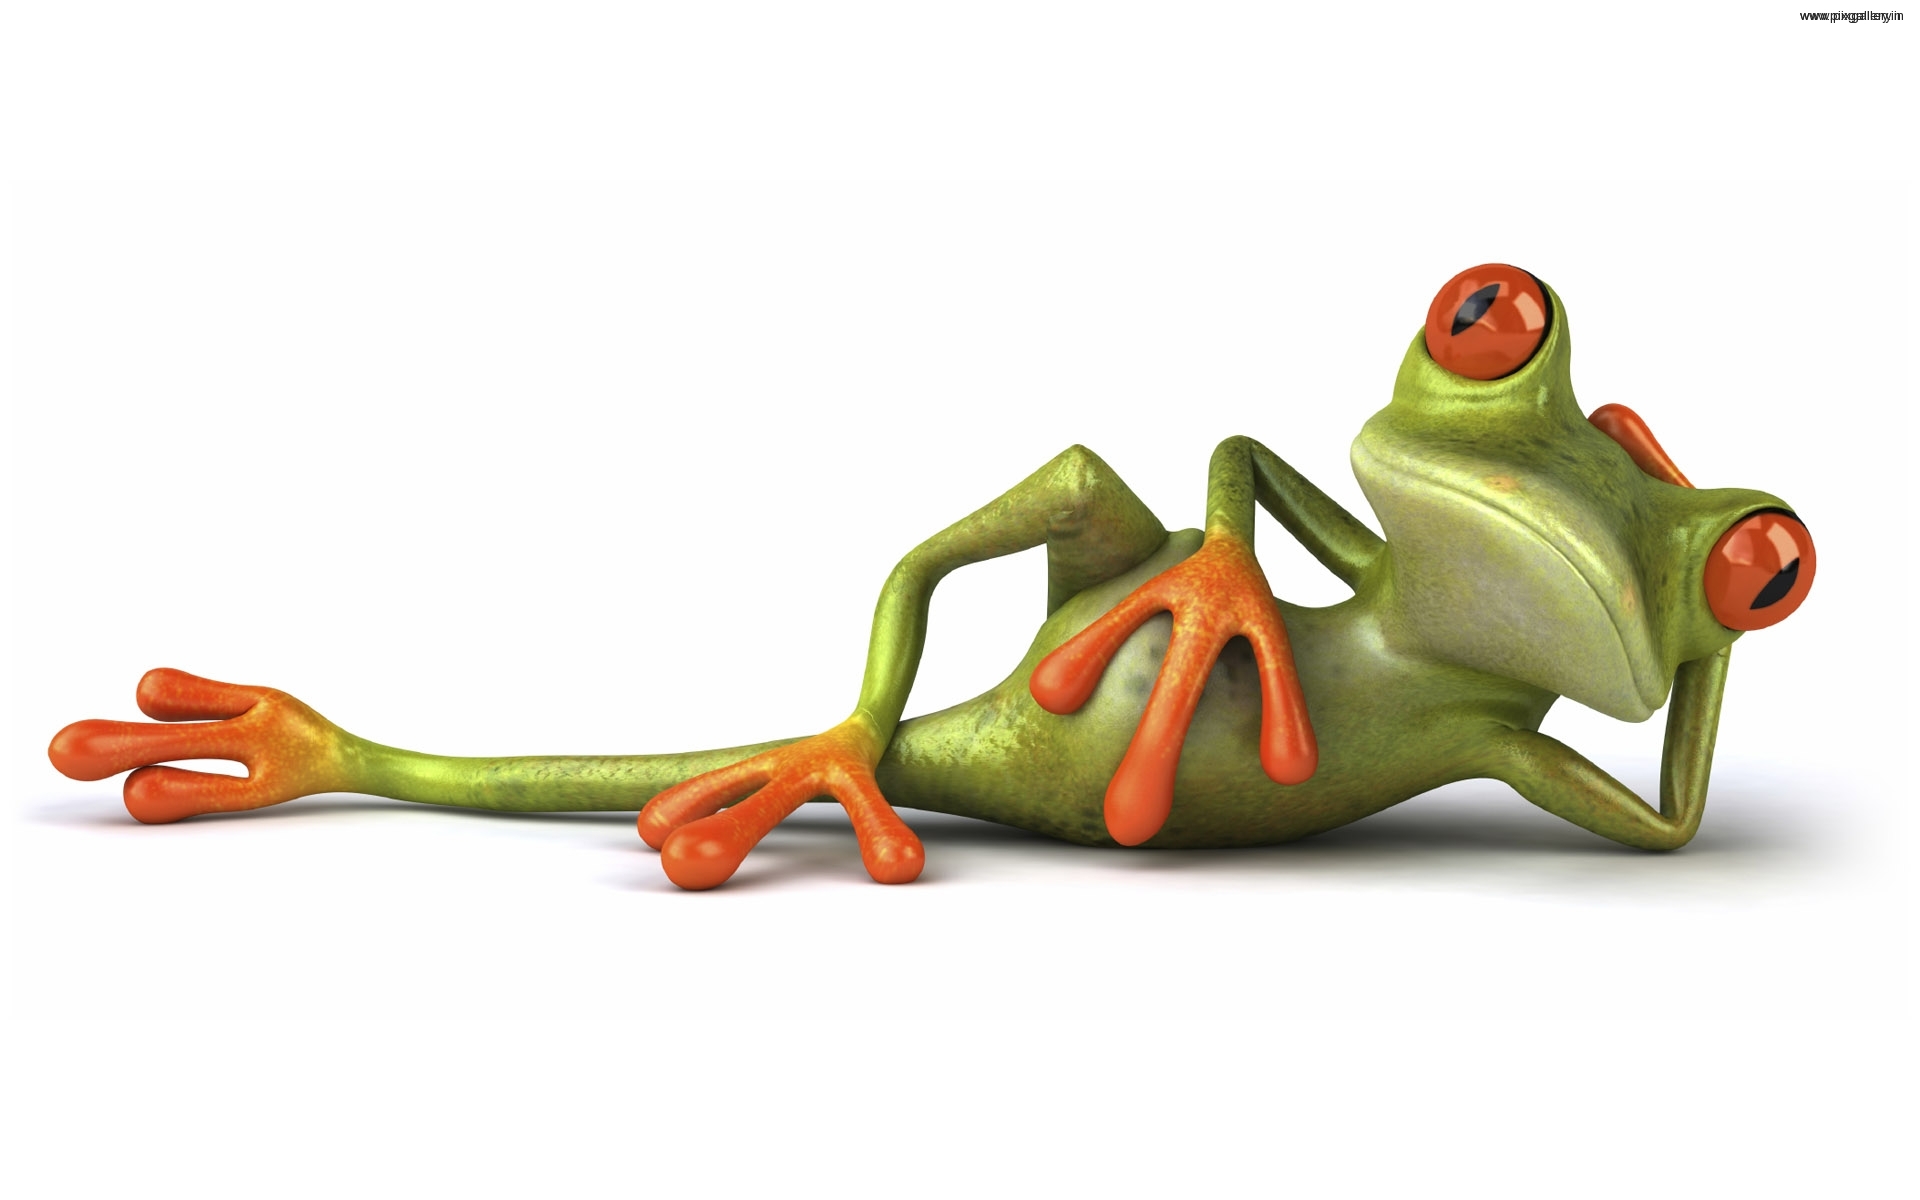  httpanimal backgroundscomred frogred frog desktop wallpaperhtml 1920x1200